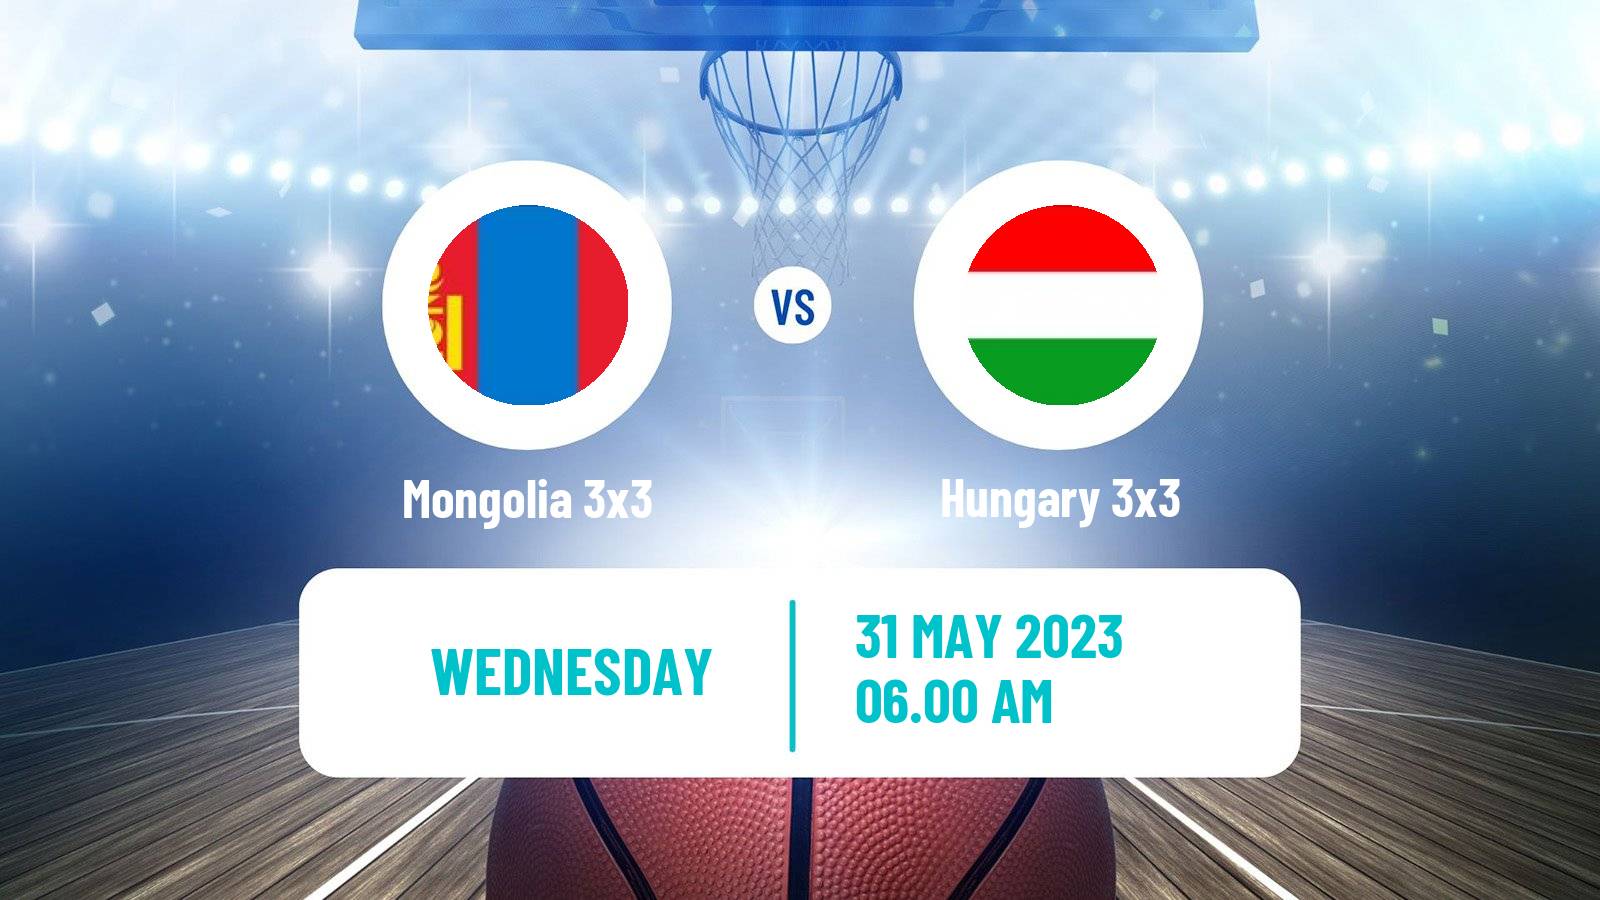 Basketball World Cup Basketball 3x3 Mongolia 3x3 - Hungary 3x3